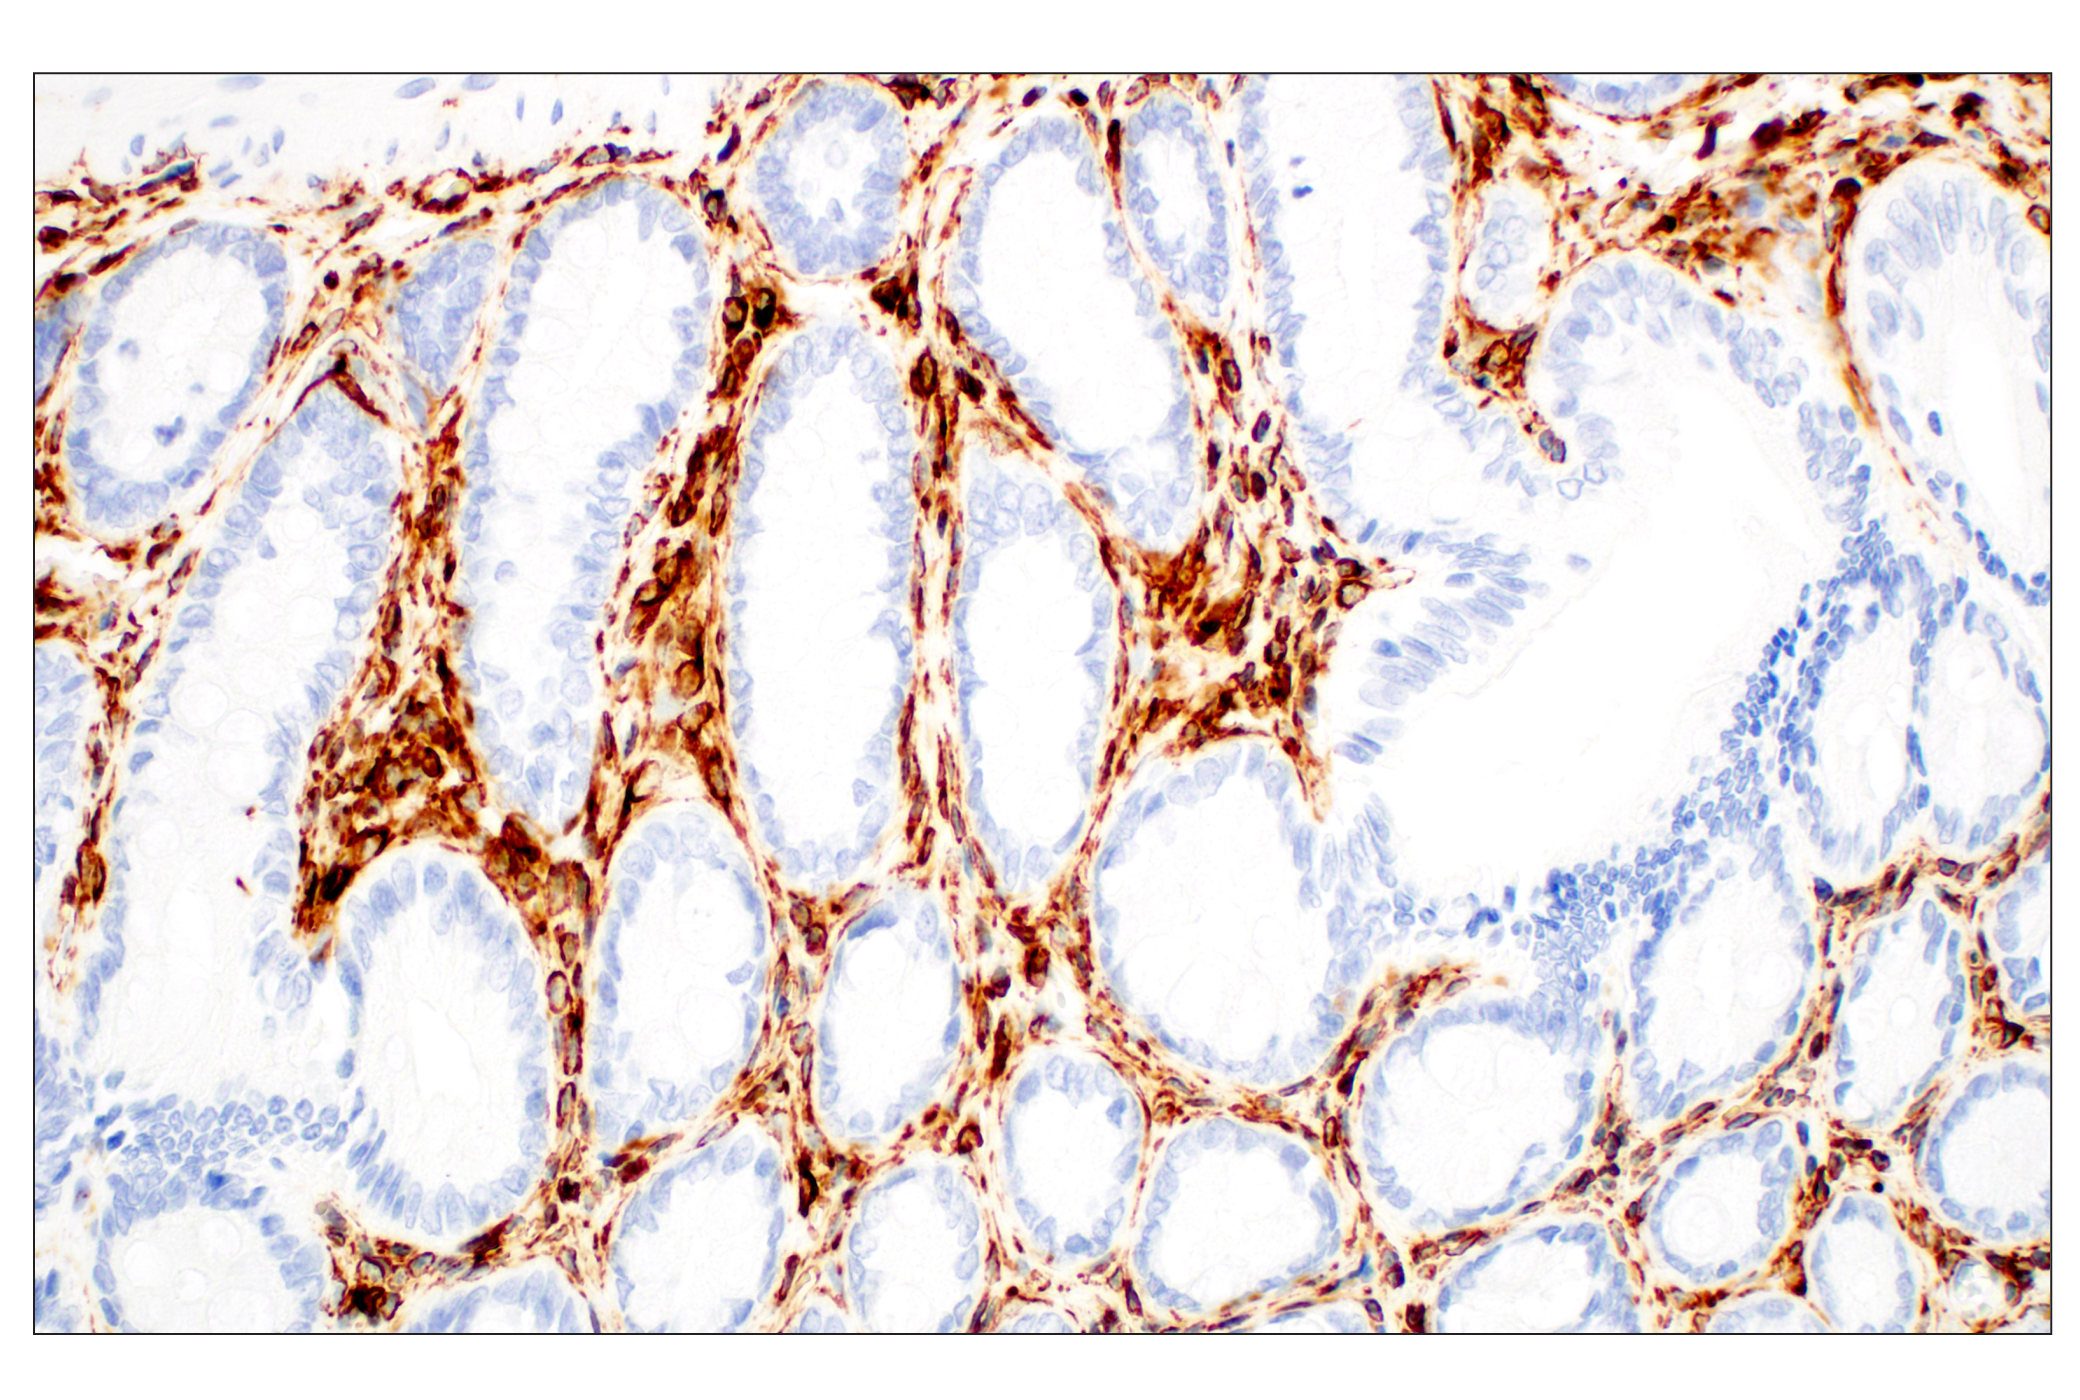  Image 37: Cell Fractionation Antibody Sampler Kit